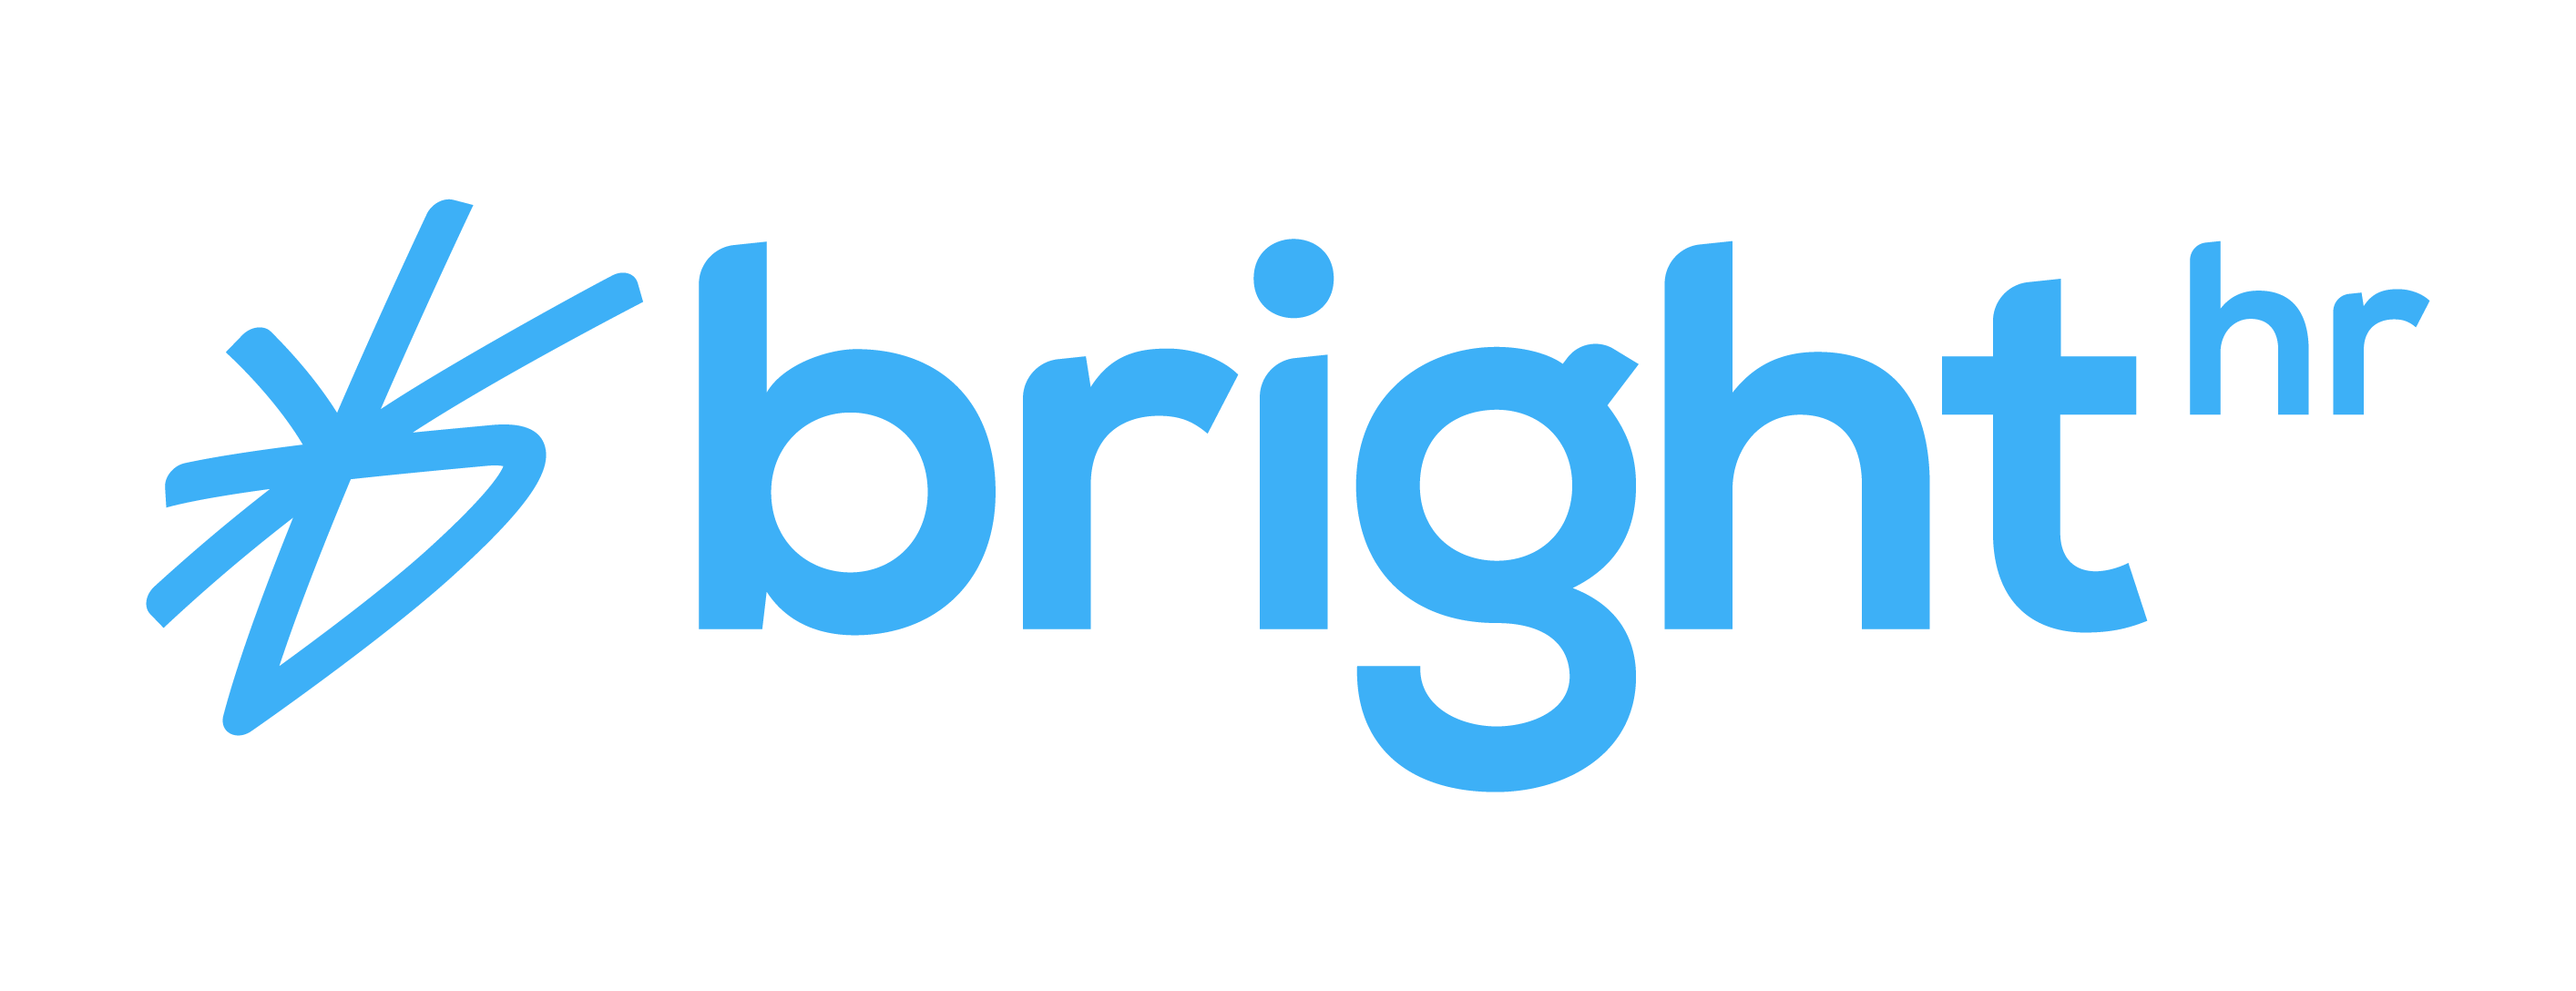 BrightHR Canada: The